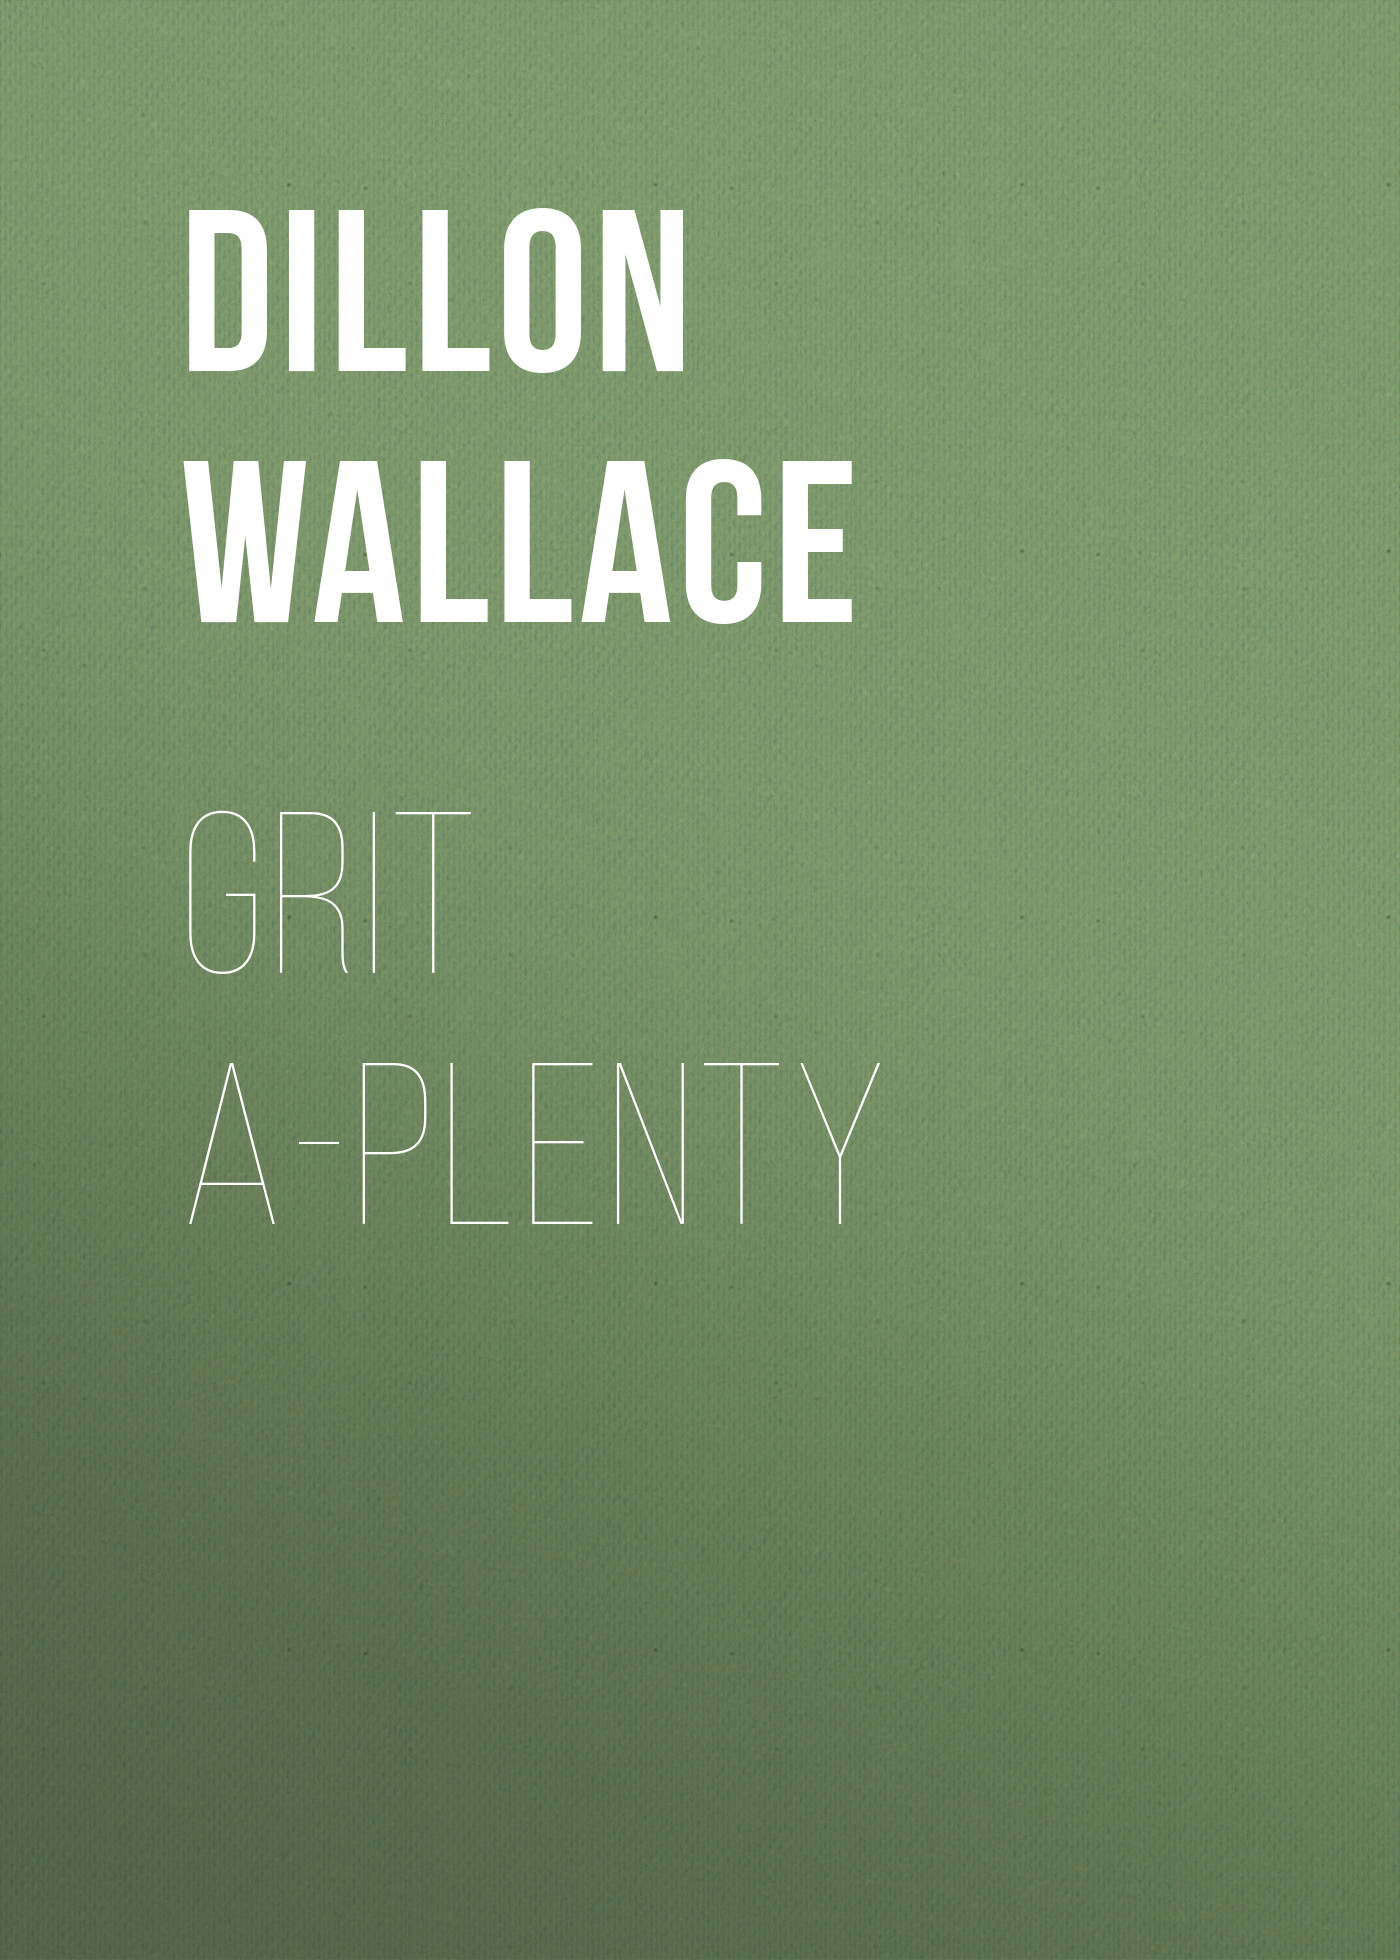 Книга Grit A-Plenty из серии , созданная Dillon Wallace, может относится к жанру Детская проза, Зарубежная старинная литература, Зарубежная классика, Зарубежные детские книги. Стоимость электронной книги Grit A-Plenty с идентификатором 34282728 составляет 0 руб.